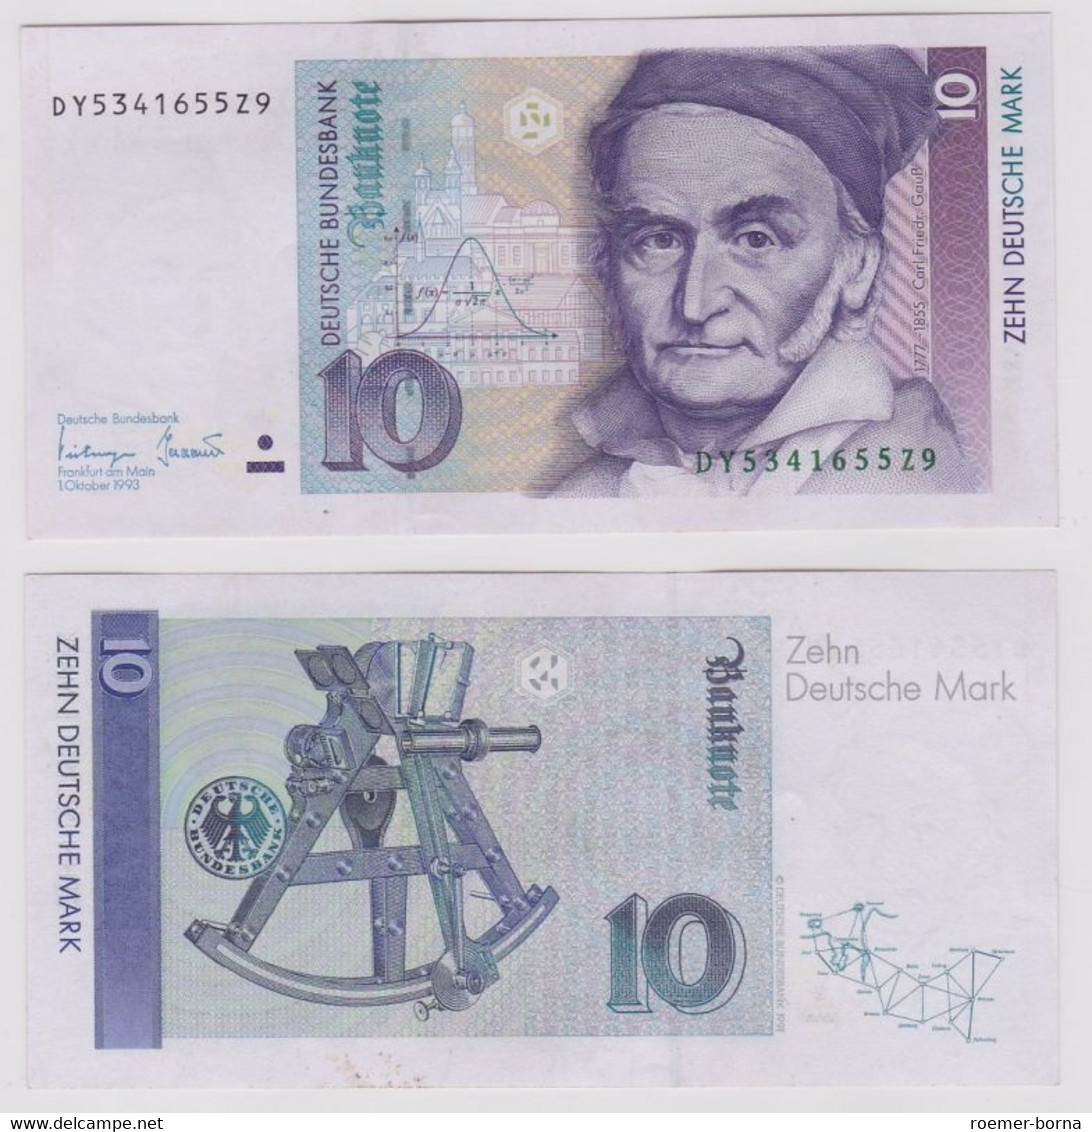 T146398 Banknote 10 DM Deutsche Mark Ro. 303a Schein 1.Okt. 1993 KN DY 5341655Z9 - 10 DM